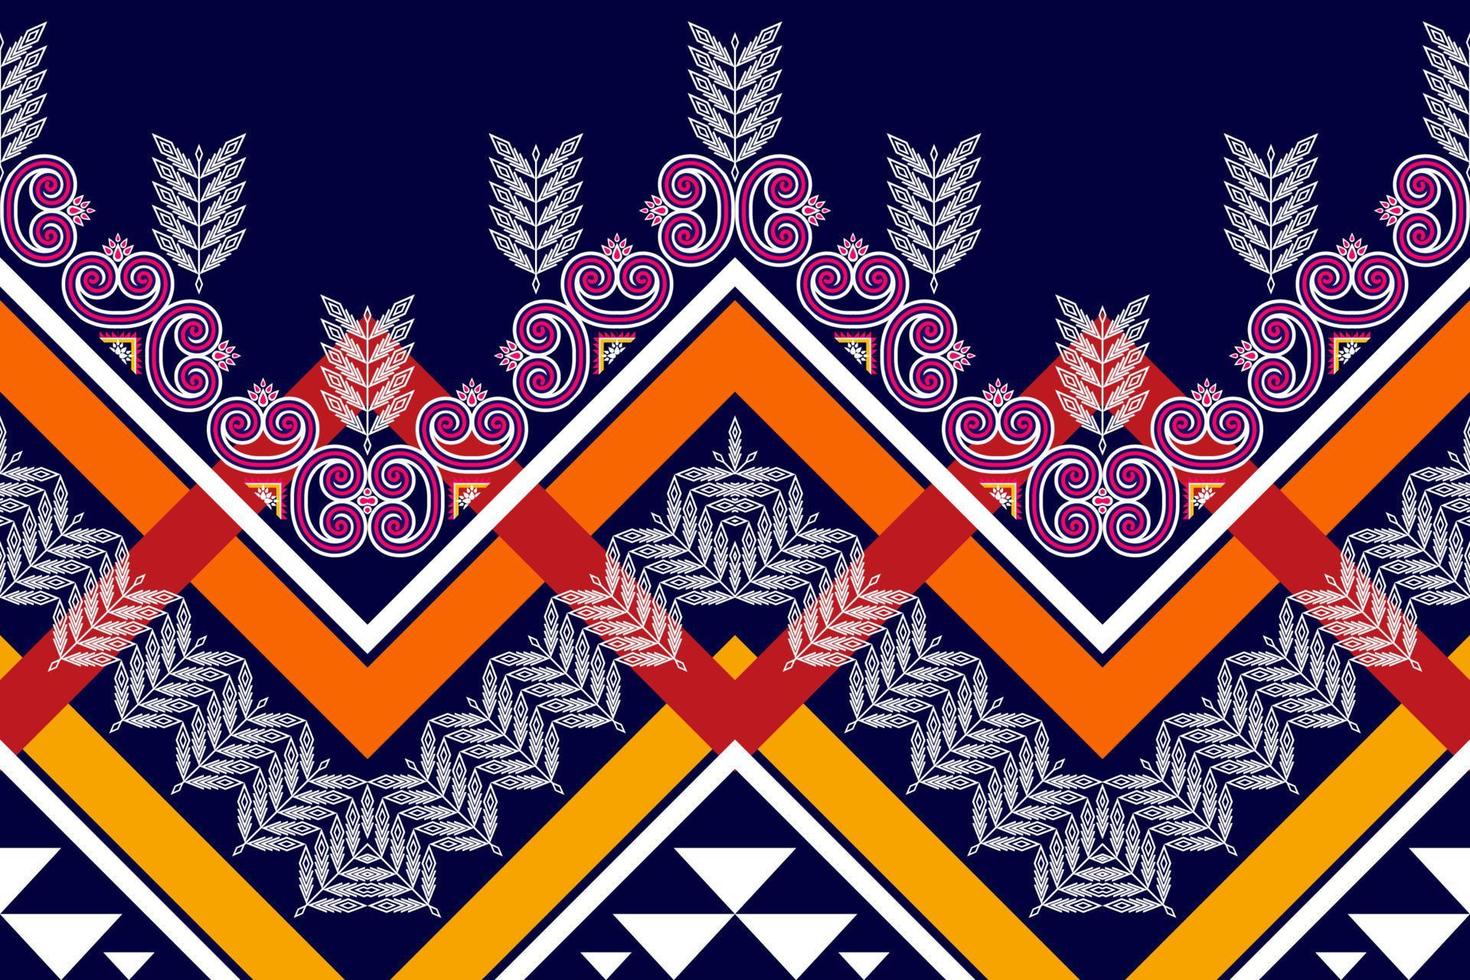 ikat ethnisches nahtloses musterdesign. aztekischer Stoff Teppich Mandala Ornamente Textildekorationen Tapete. Motiv tribal boho einheimischer Truthahn traditioneller Stickereivektor vektor